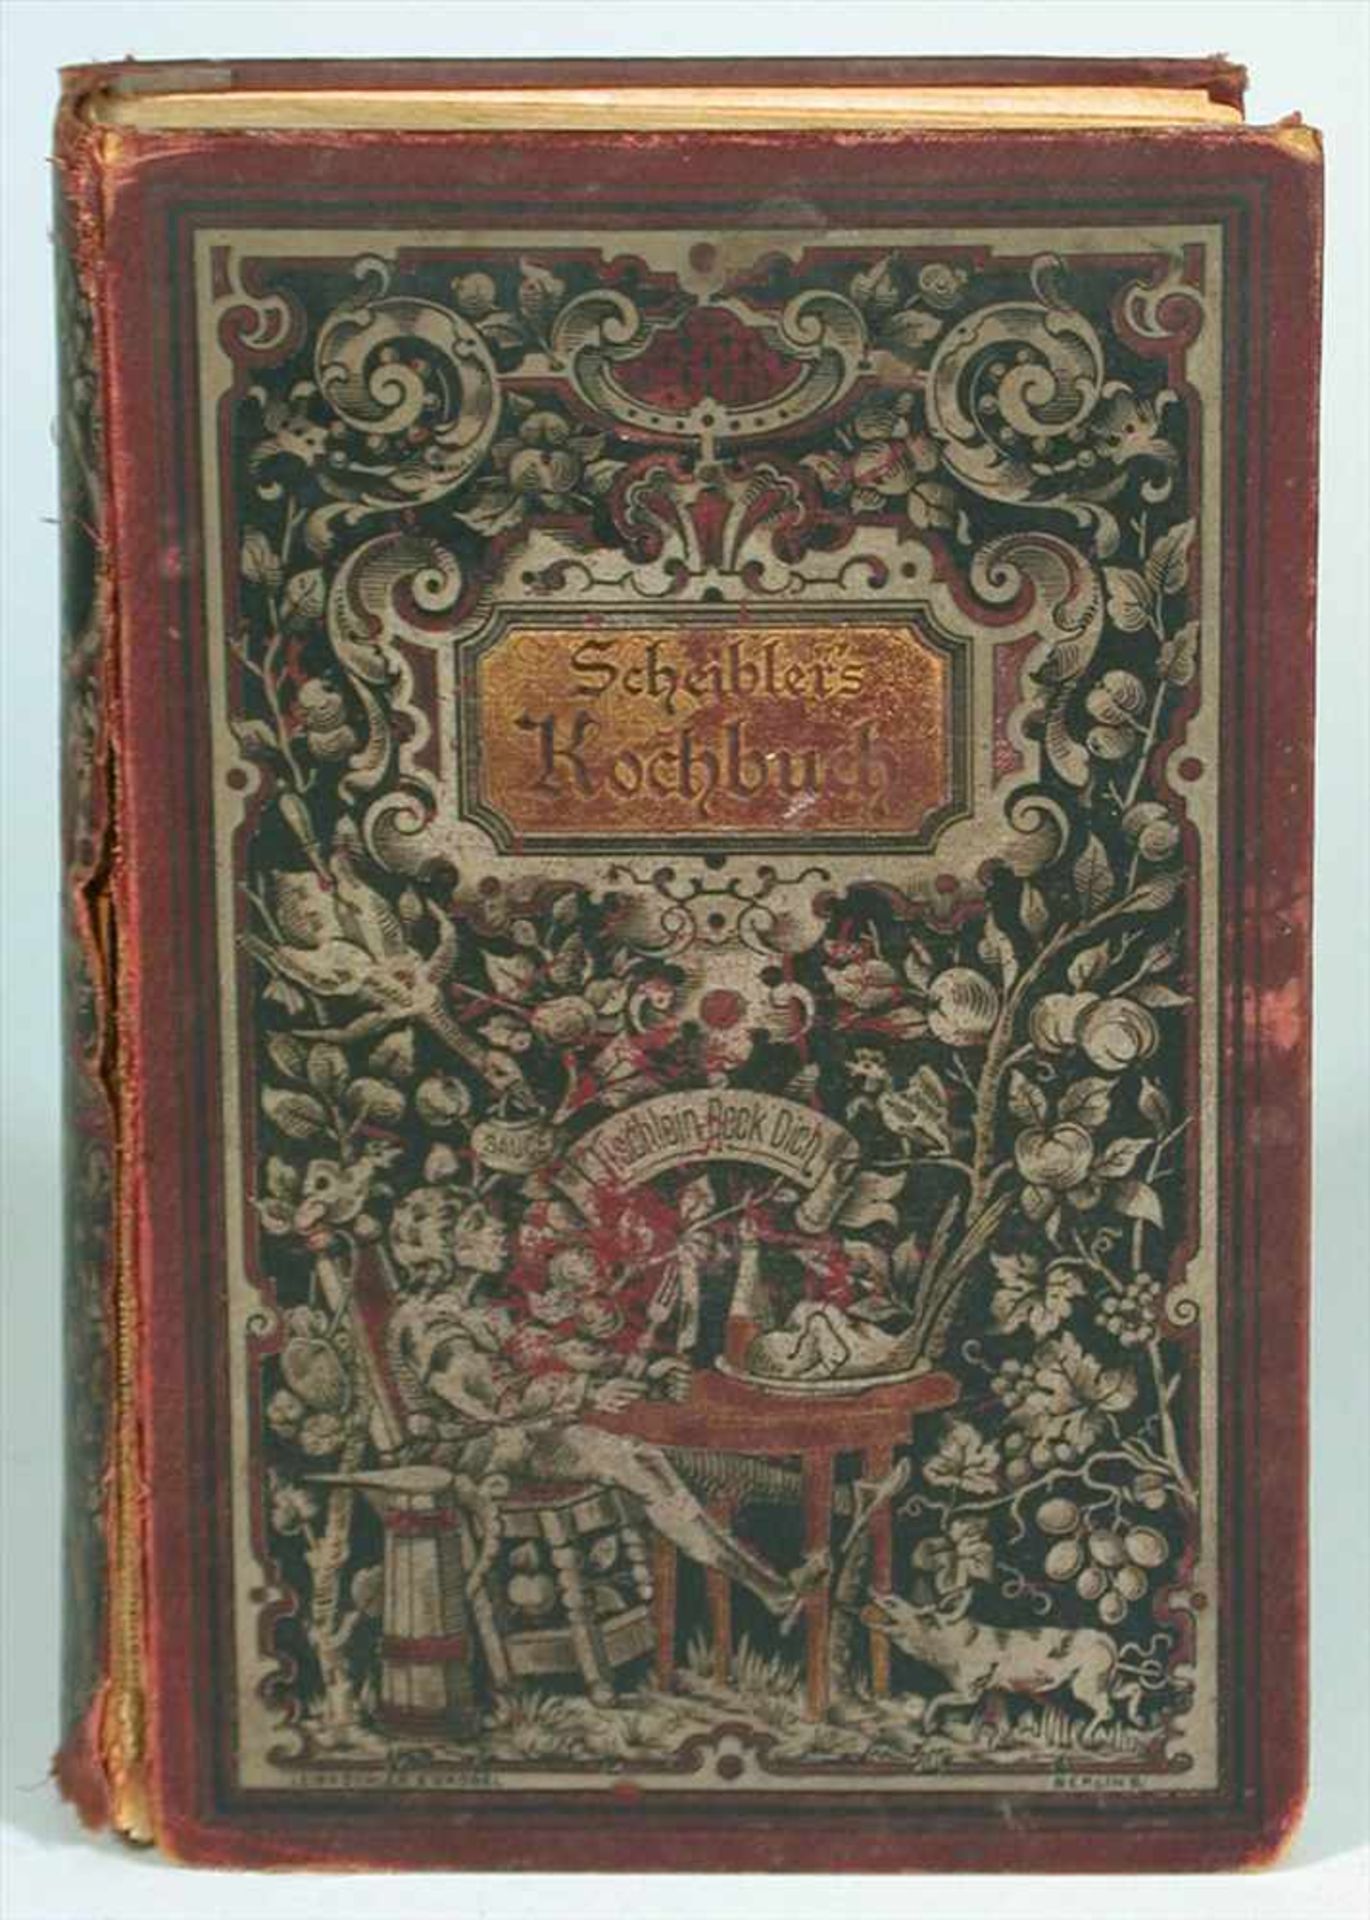 Scheibler, S.W.: Deutsches Kochbuch, Amelang, Leipzig 1892Titellithographie, im Anhang